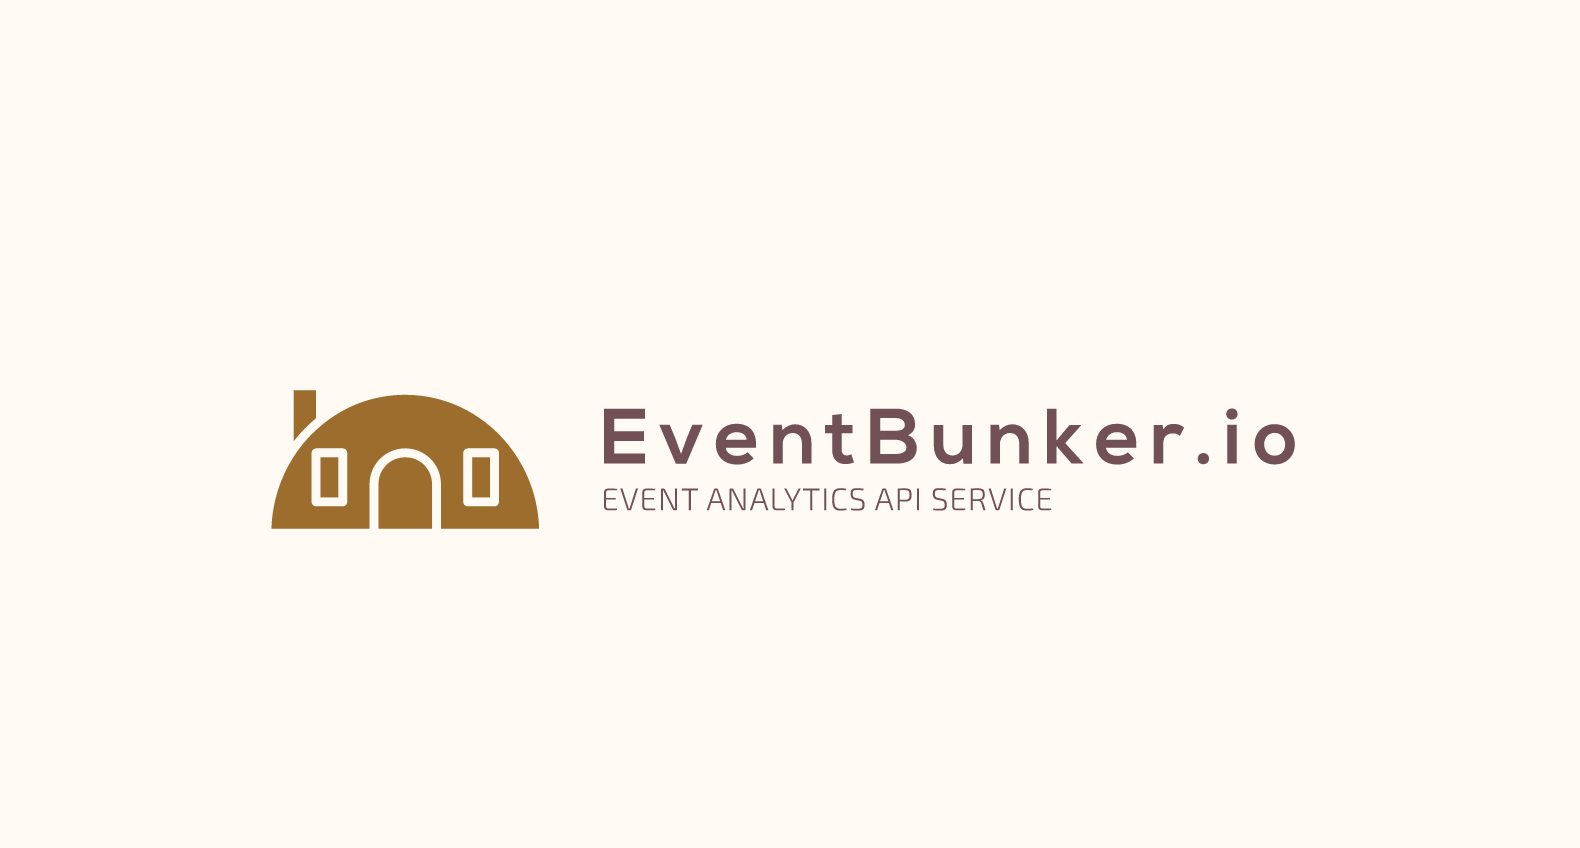 EventBunker.io